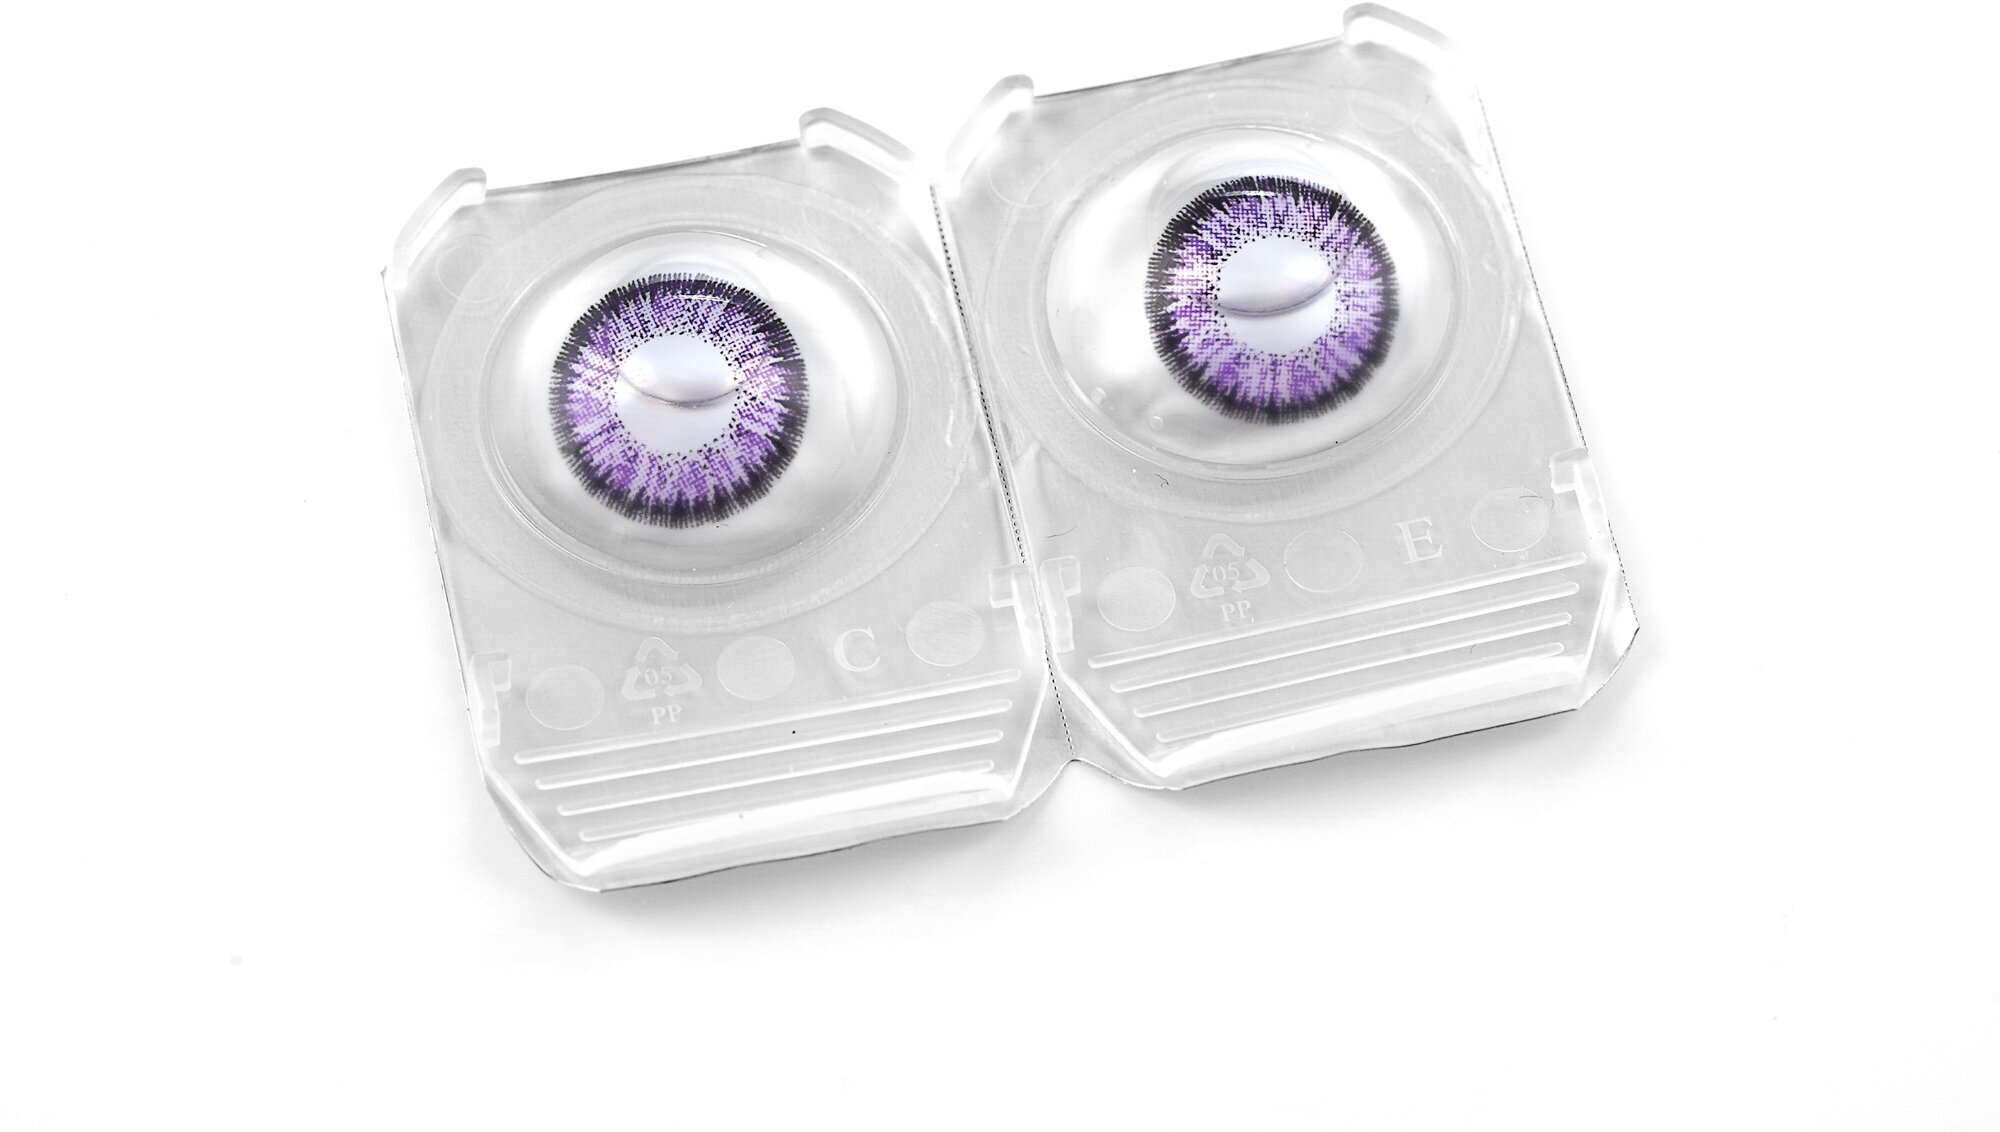 Цветные контактные линзы OKVision Fusion 3 месяца, -8.00 8.6, Violet 2, 2 шт. диаметр 14 мм.